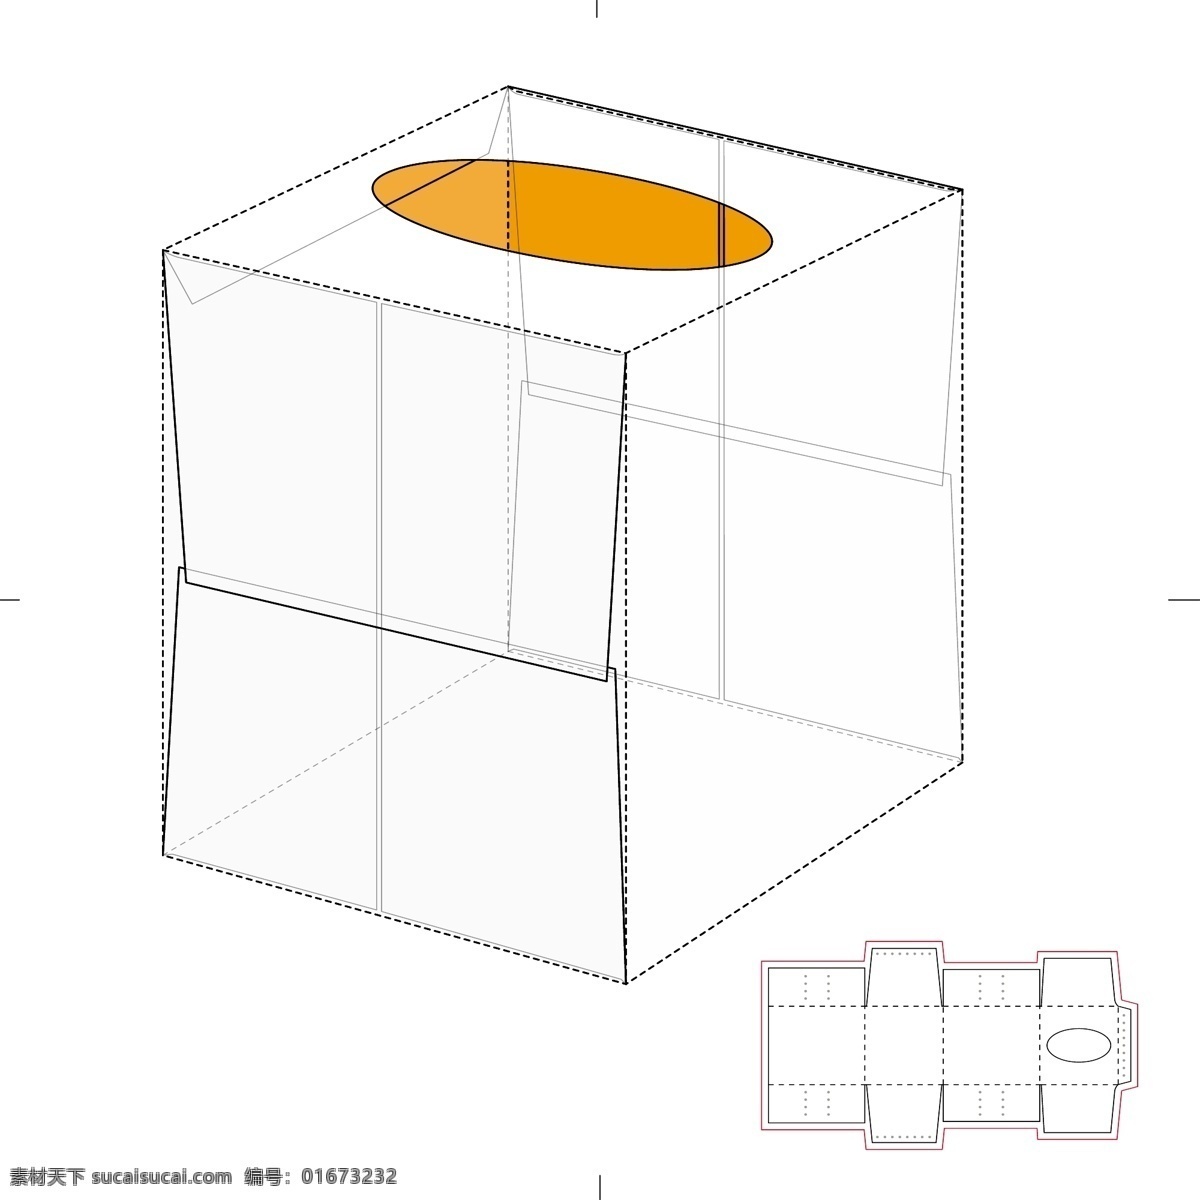 纸盒 包装 布局 刀 线图 纸箱 包装布局刀线 切割图 解剖图 纸盒包装 展开图 纸盒组合图 设计素材 包装图线条 素描图